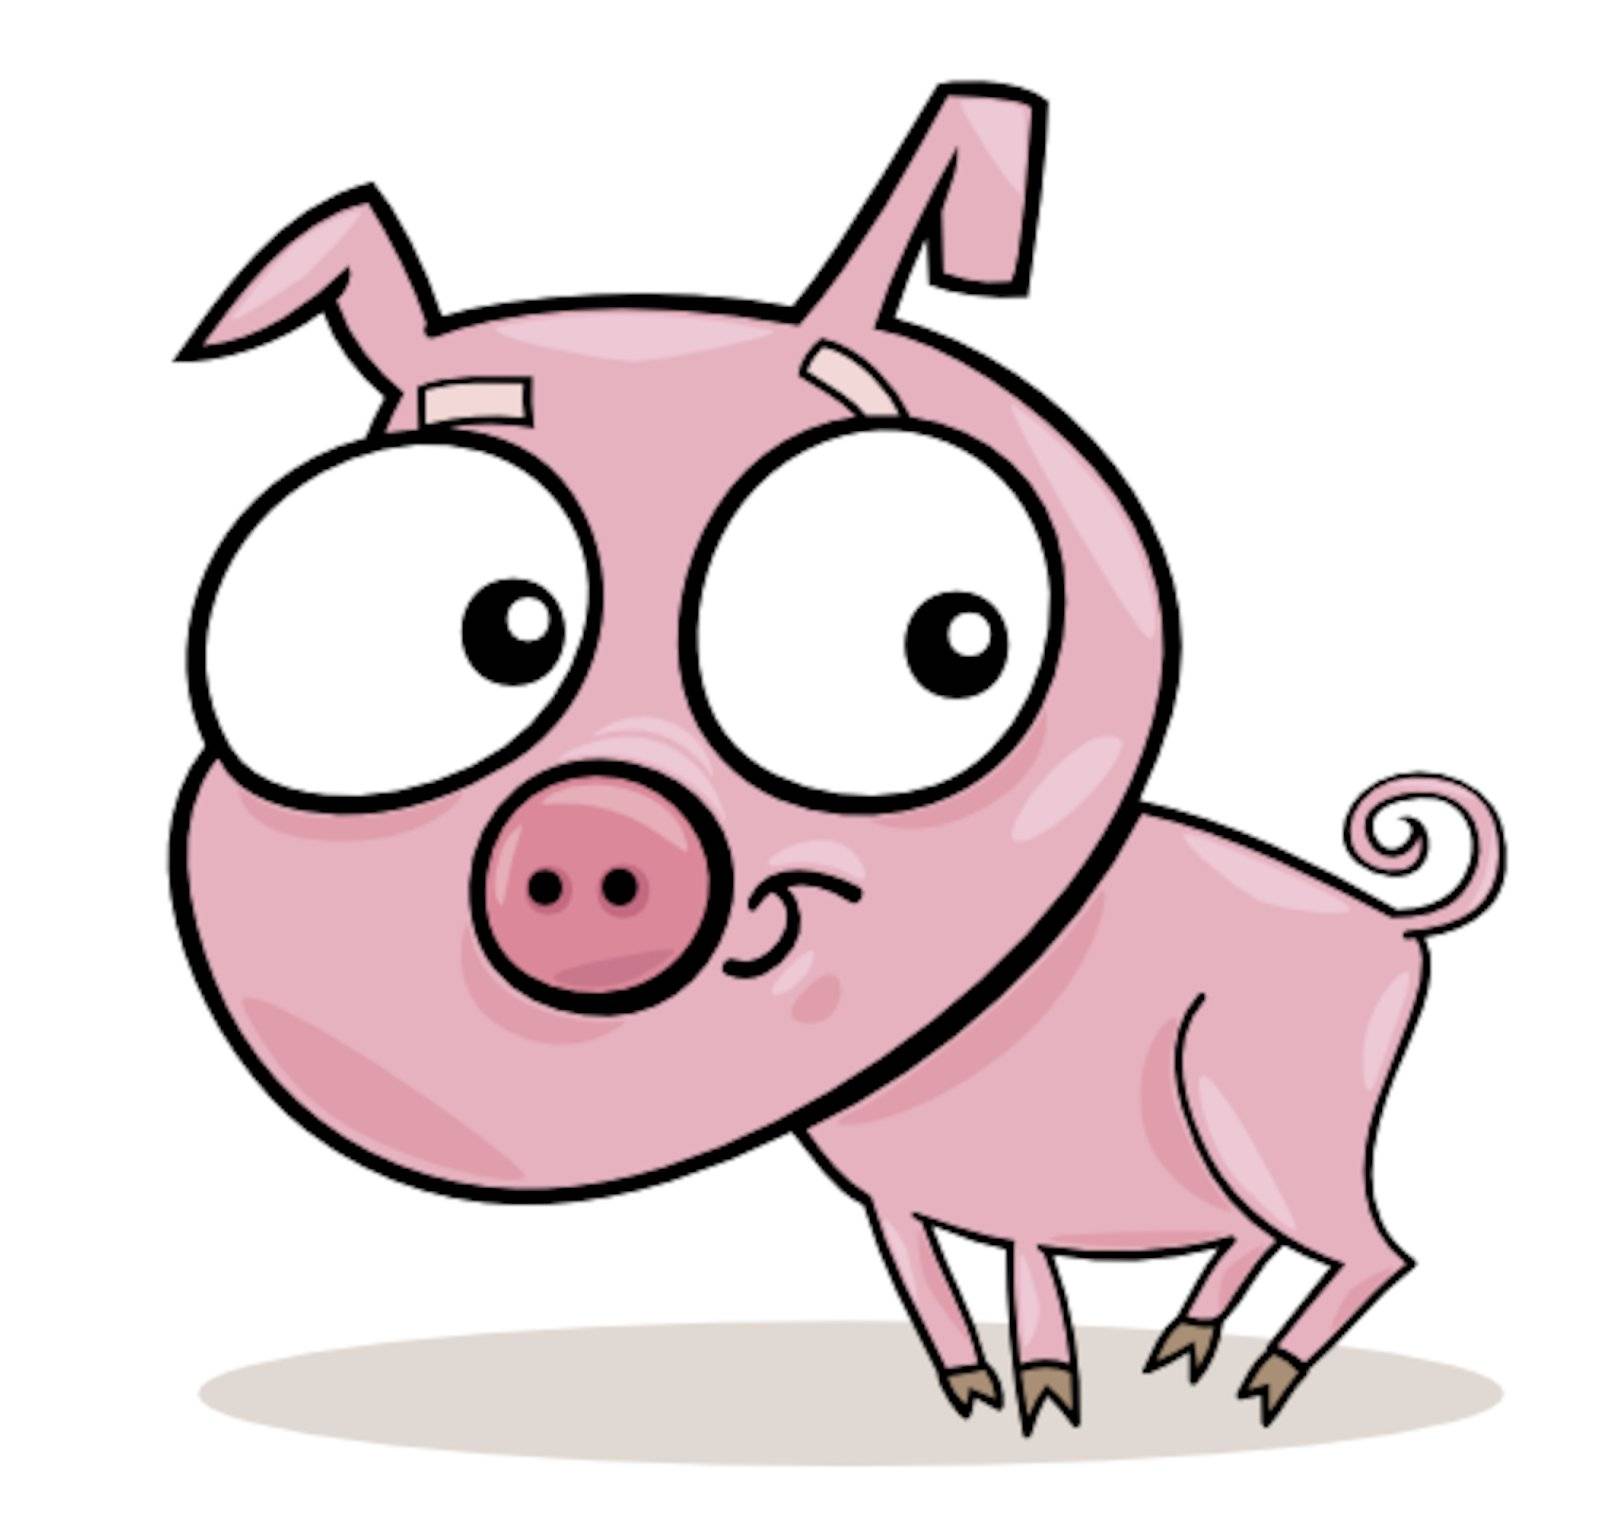 cartoon illustration of cute little piggy